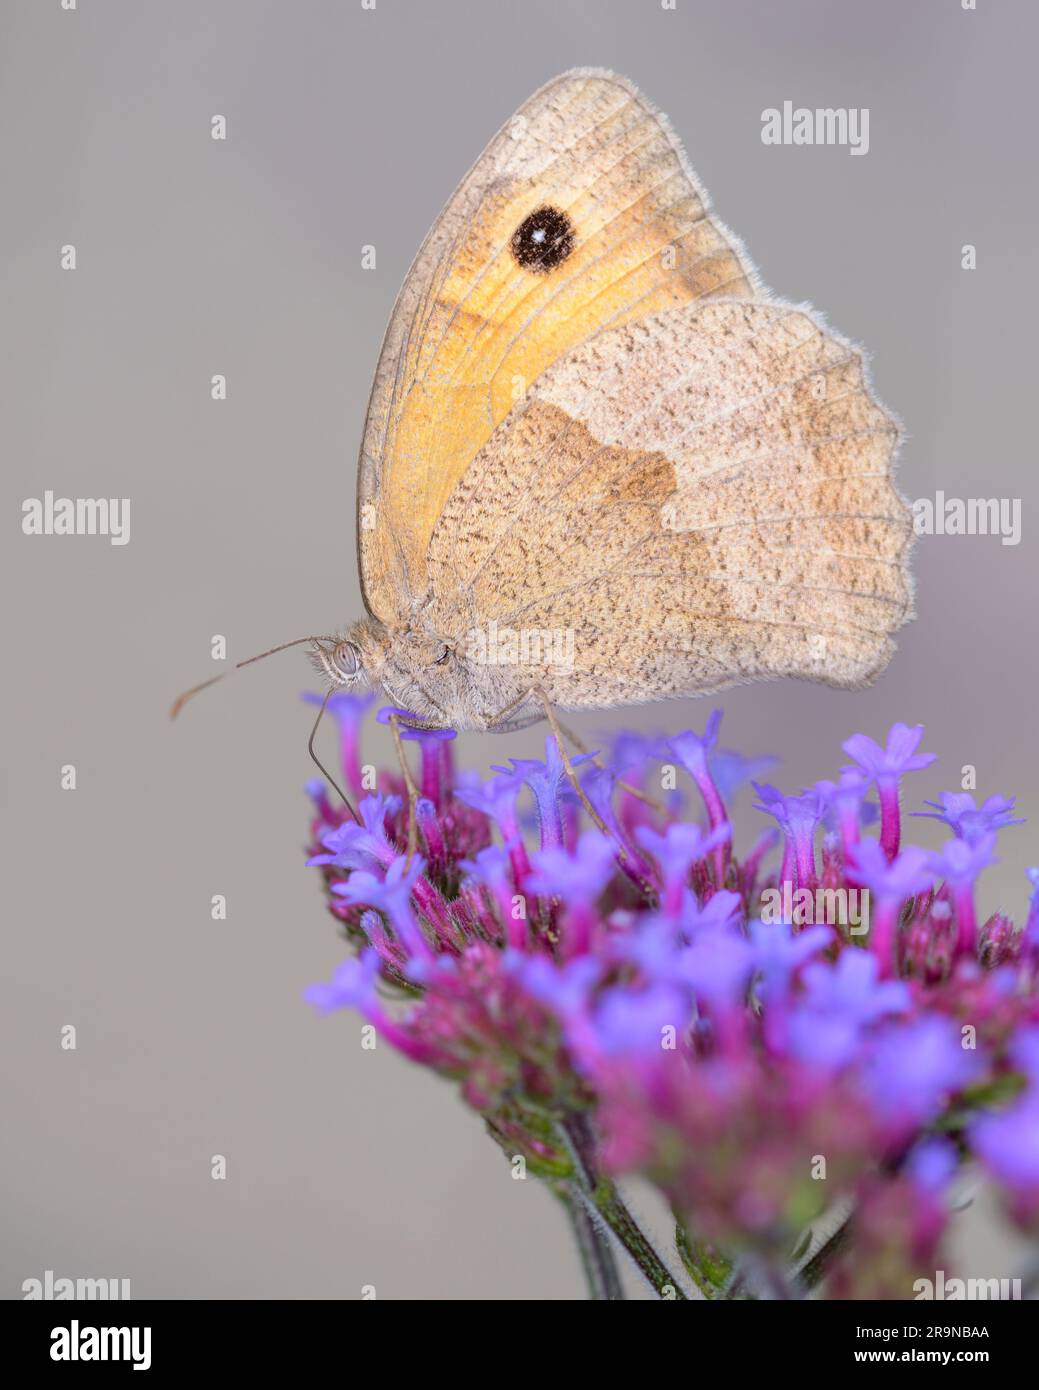 Wiese Brauner Schmetterling - Maniola jurtina - saugt Nektar mit seinem Stamm aus der Blüte der Pfirsich-Spitze Vervain - Verbena bonariensis Stockfoto